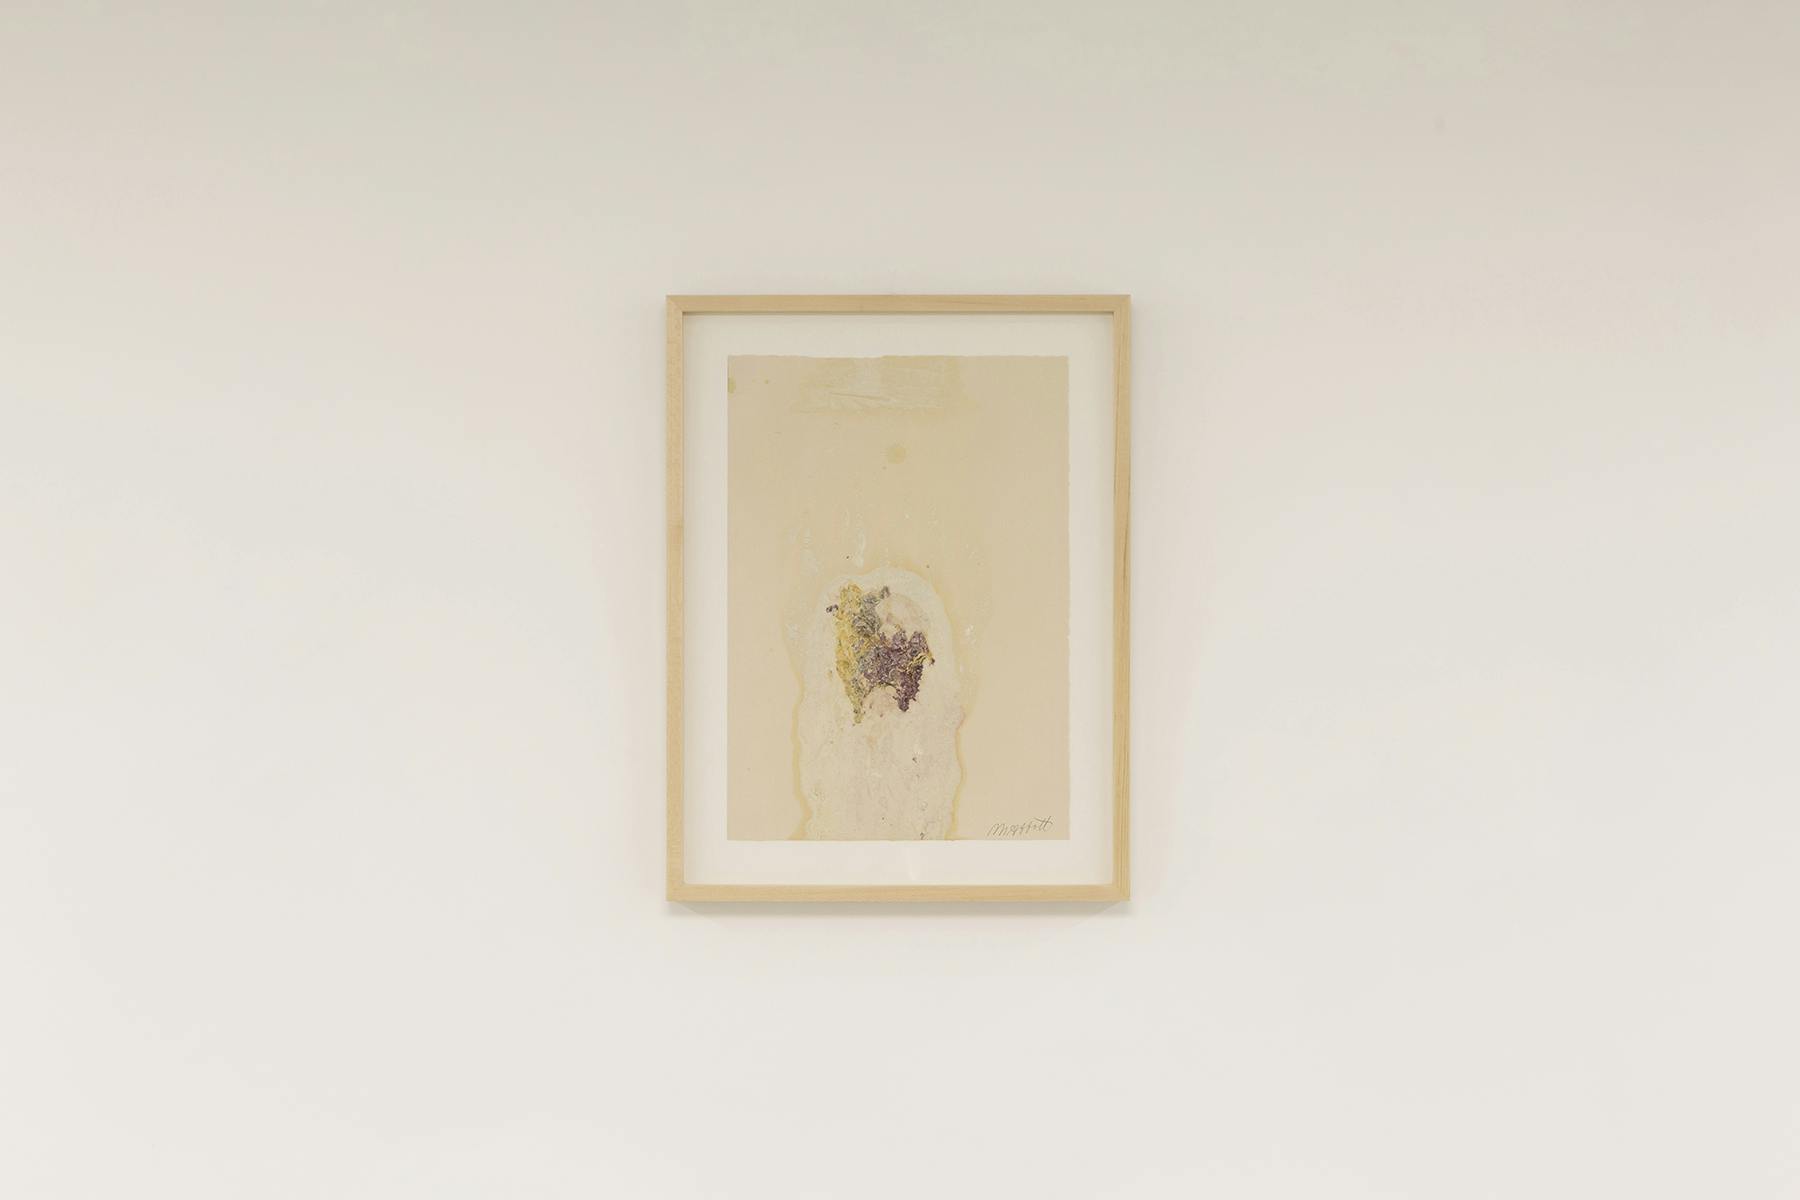 Marble and Flowers (Flesh,Venus, A Heart), 2021, monostampa, fiori e polvere di marmo su carta, 45 x 34 cm